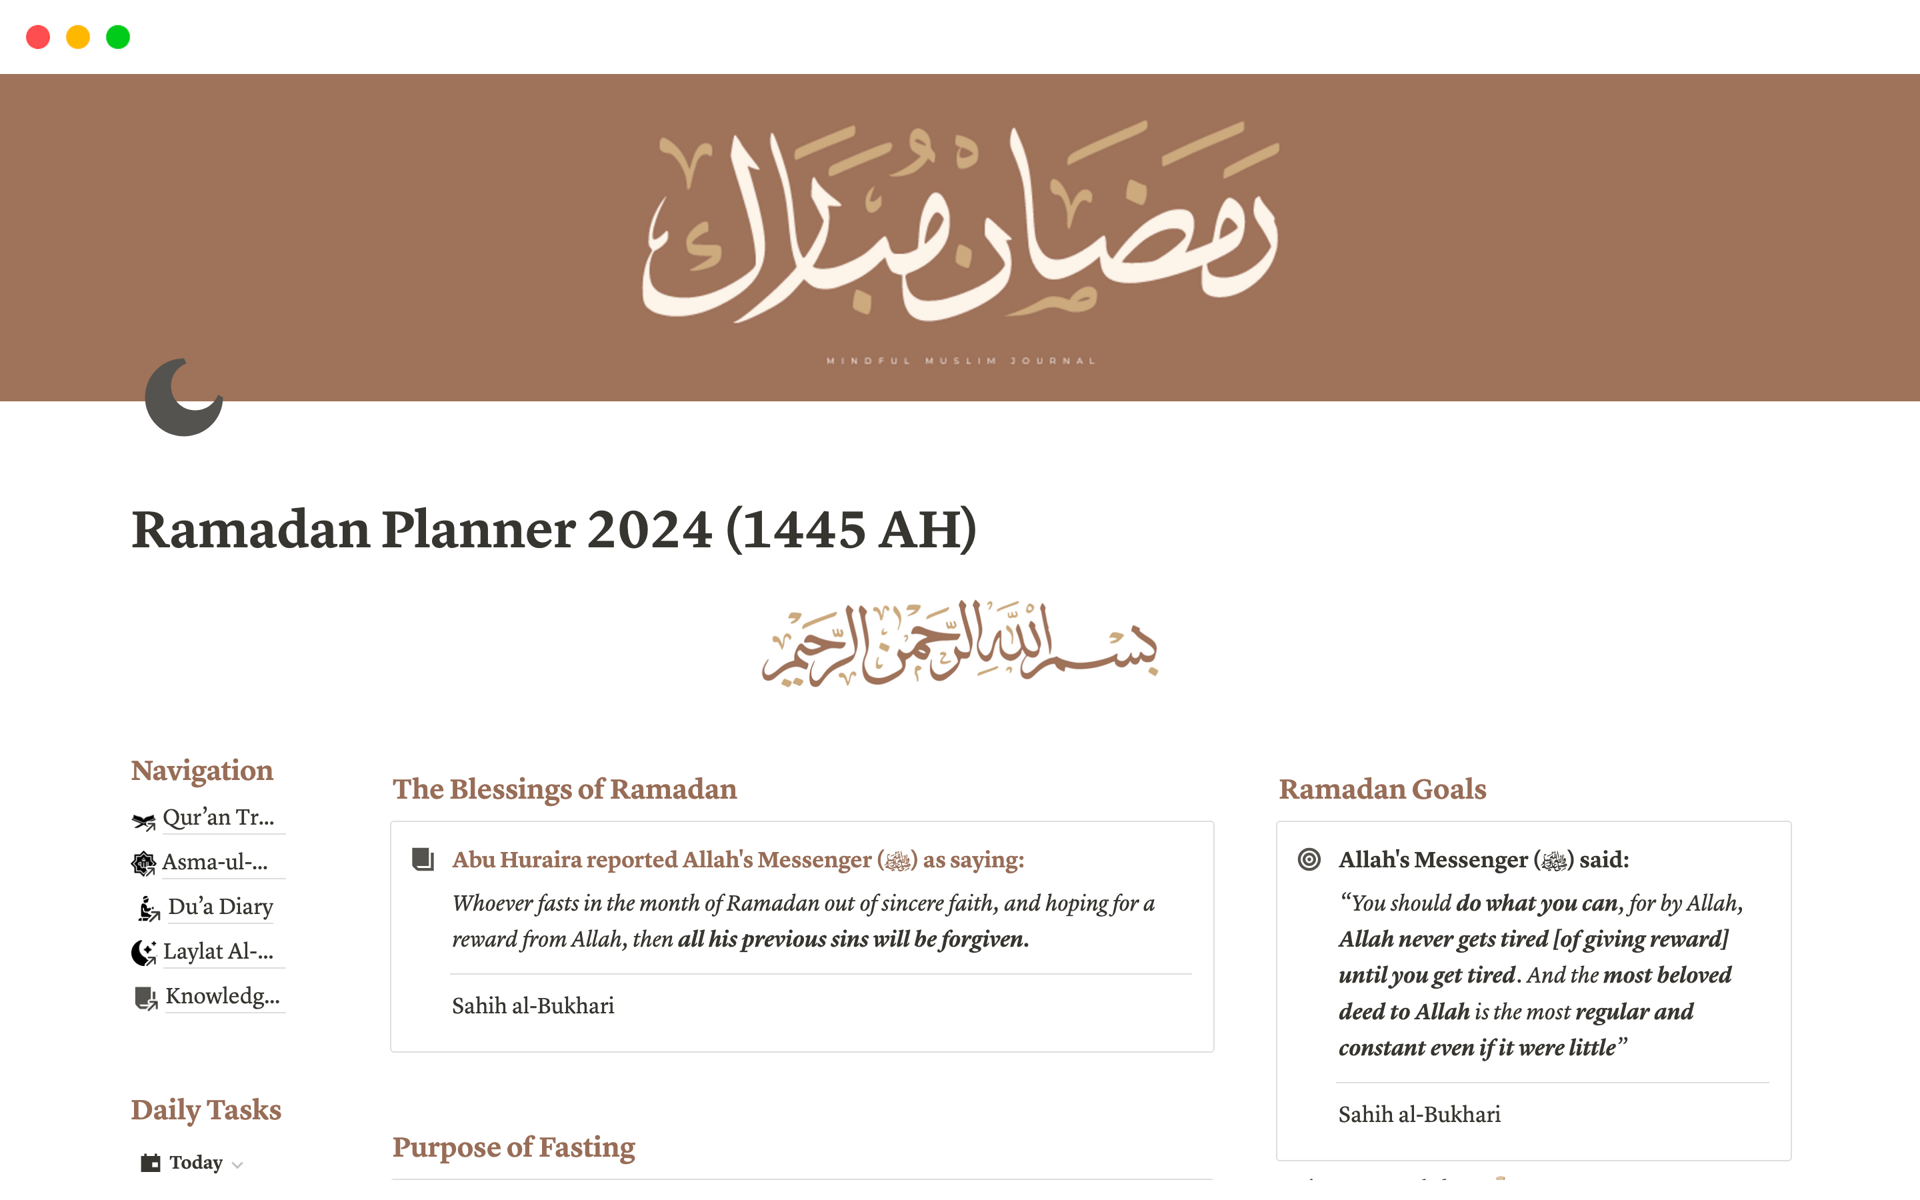 Uma prévia do modelo para Ultimate Ramadan Planner